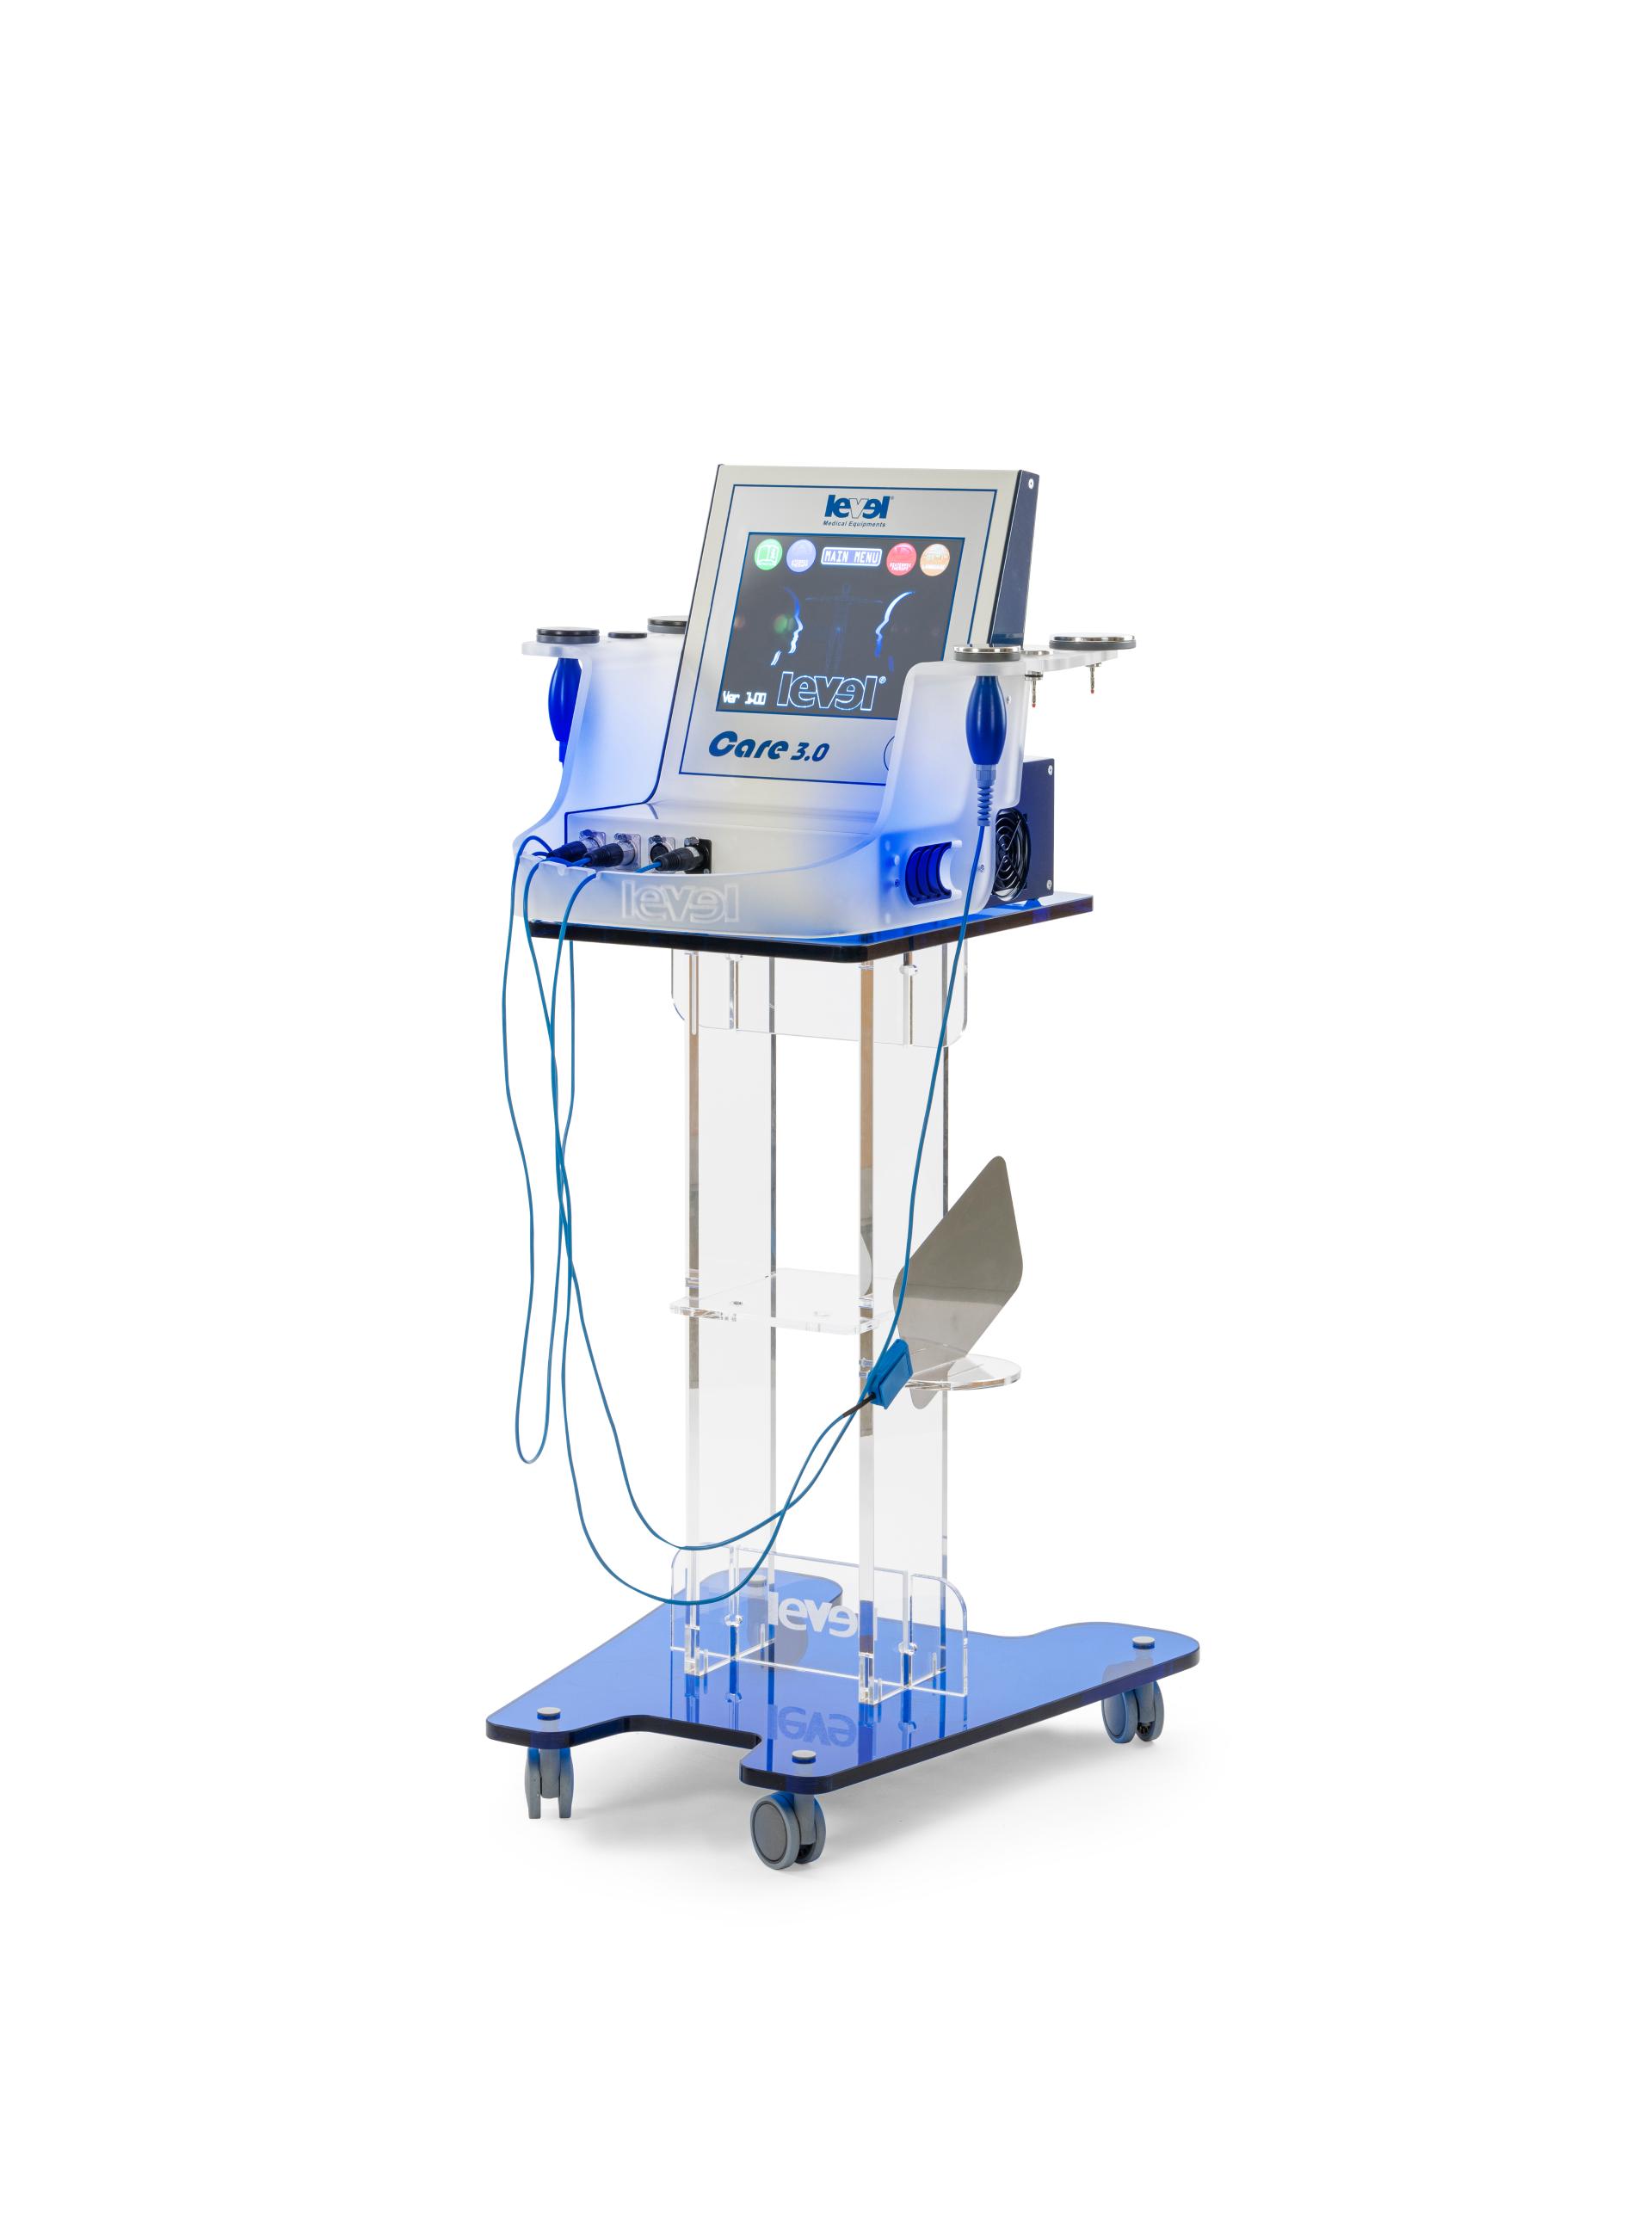 Care 3.0 Dispositivo elettromedicale per tecarterapia